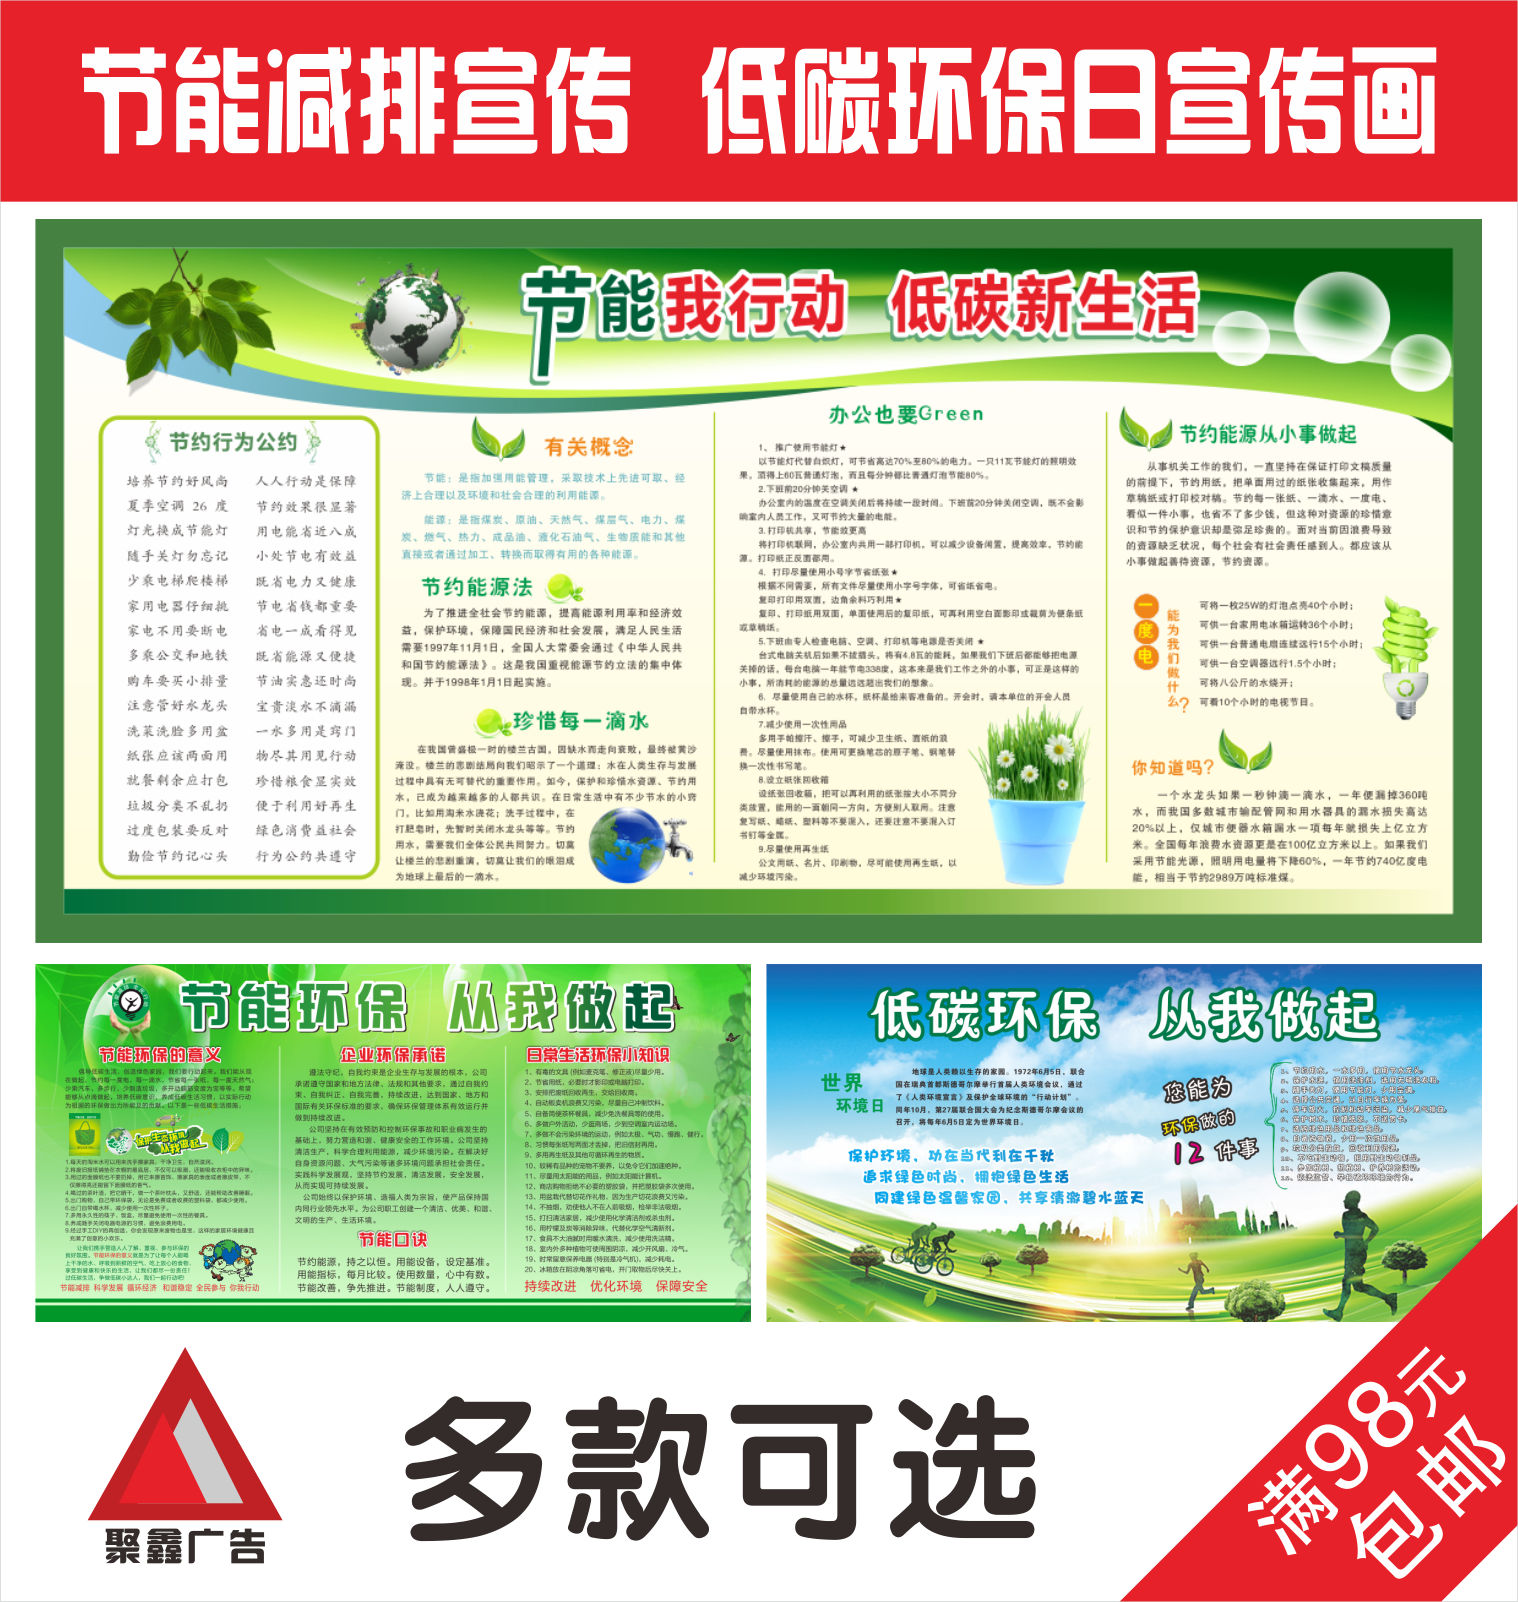 节能减排环保画工厂环境保护展板标语机关单位环保宣传海报 HBA